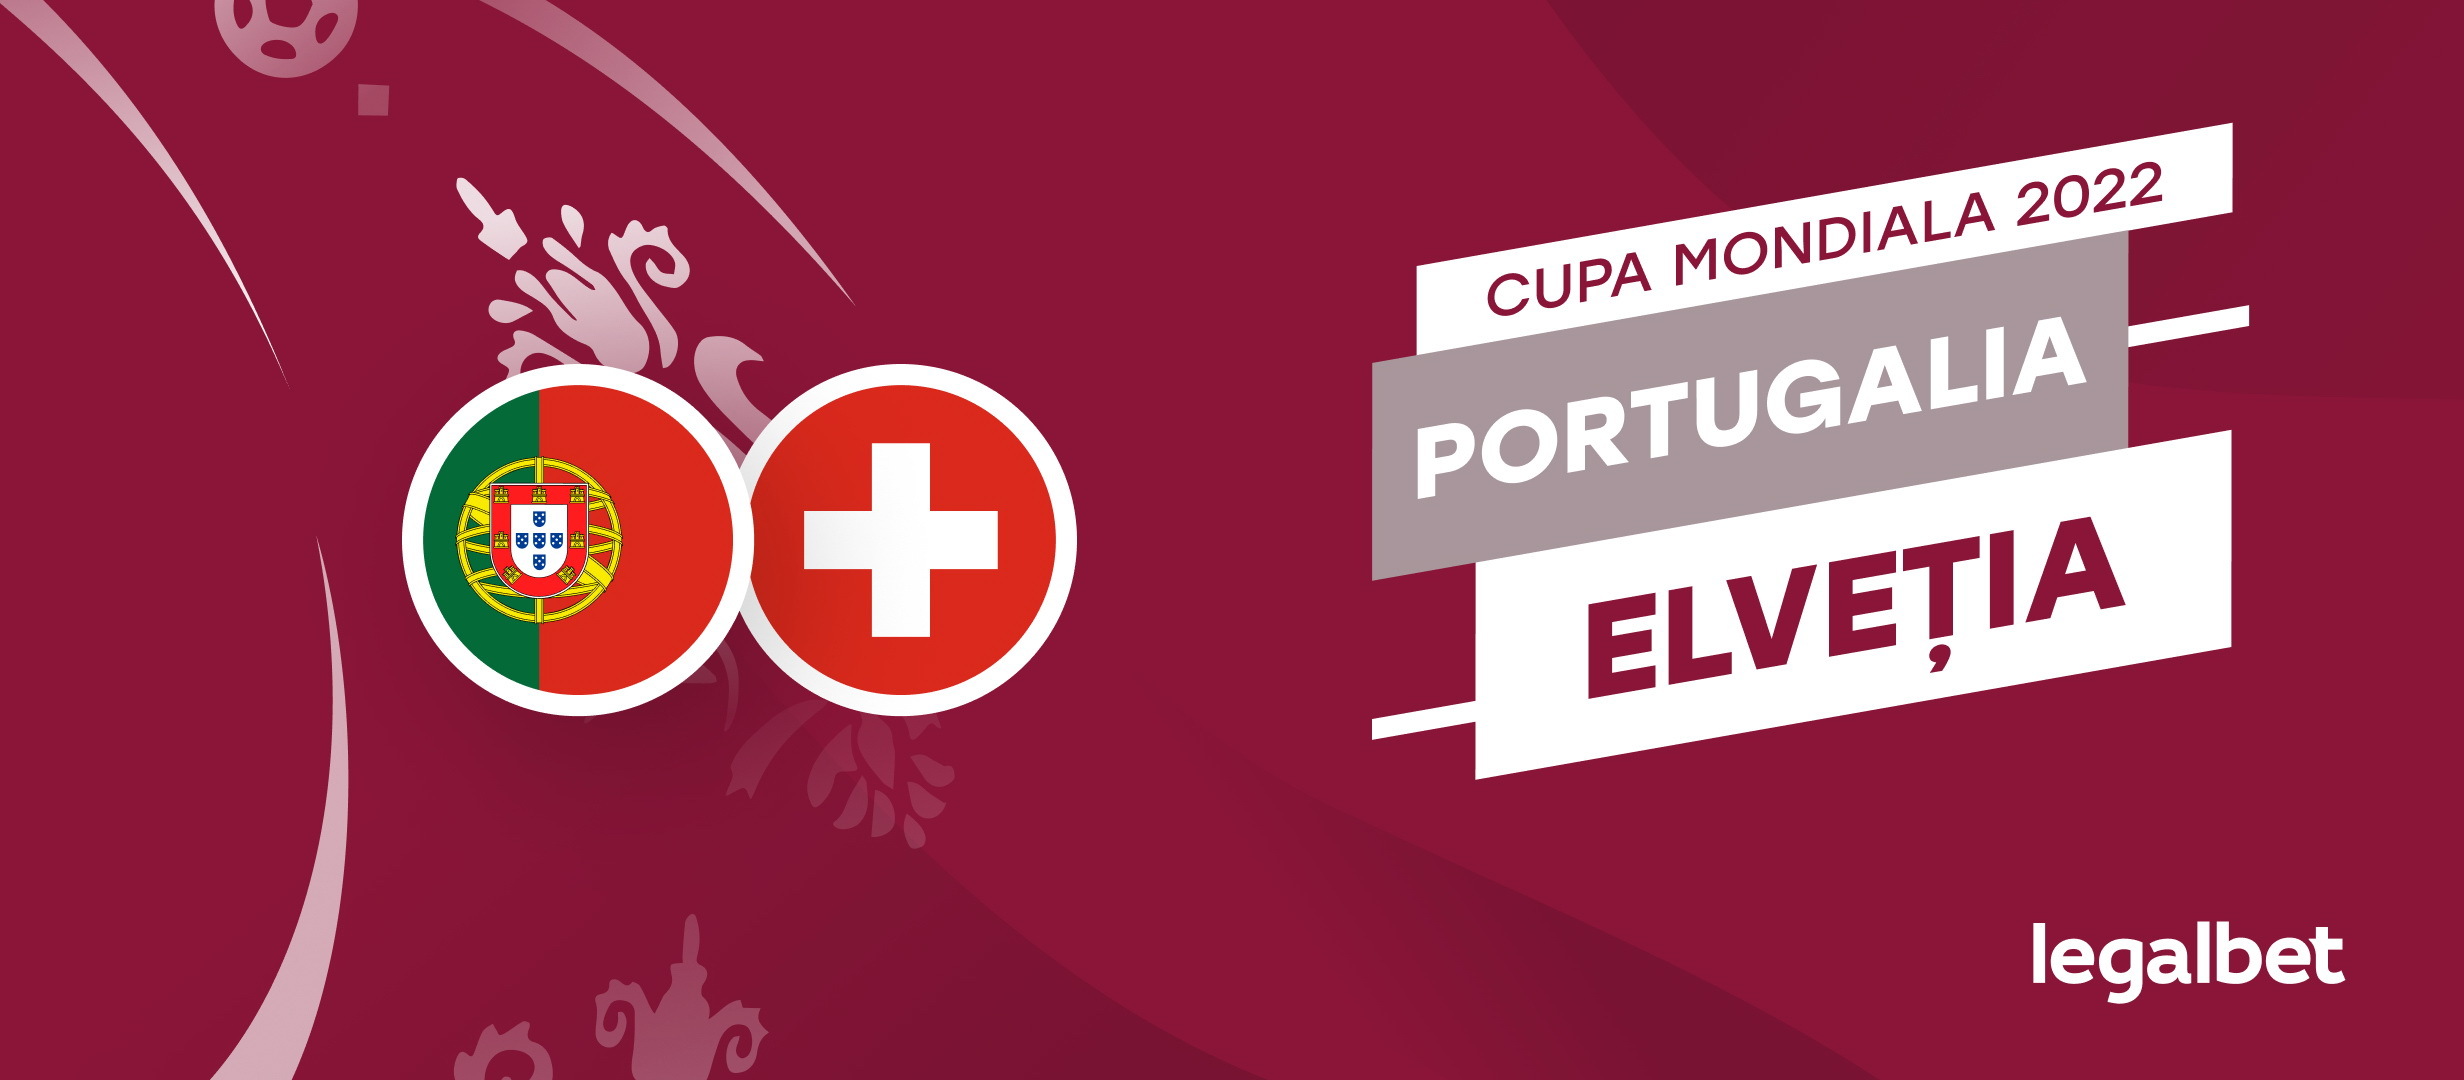 Portugalia - Elvetia: pont pariuri World Cup 2022